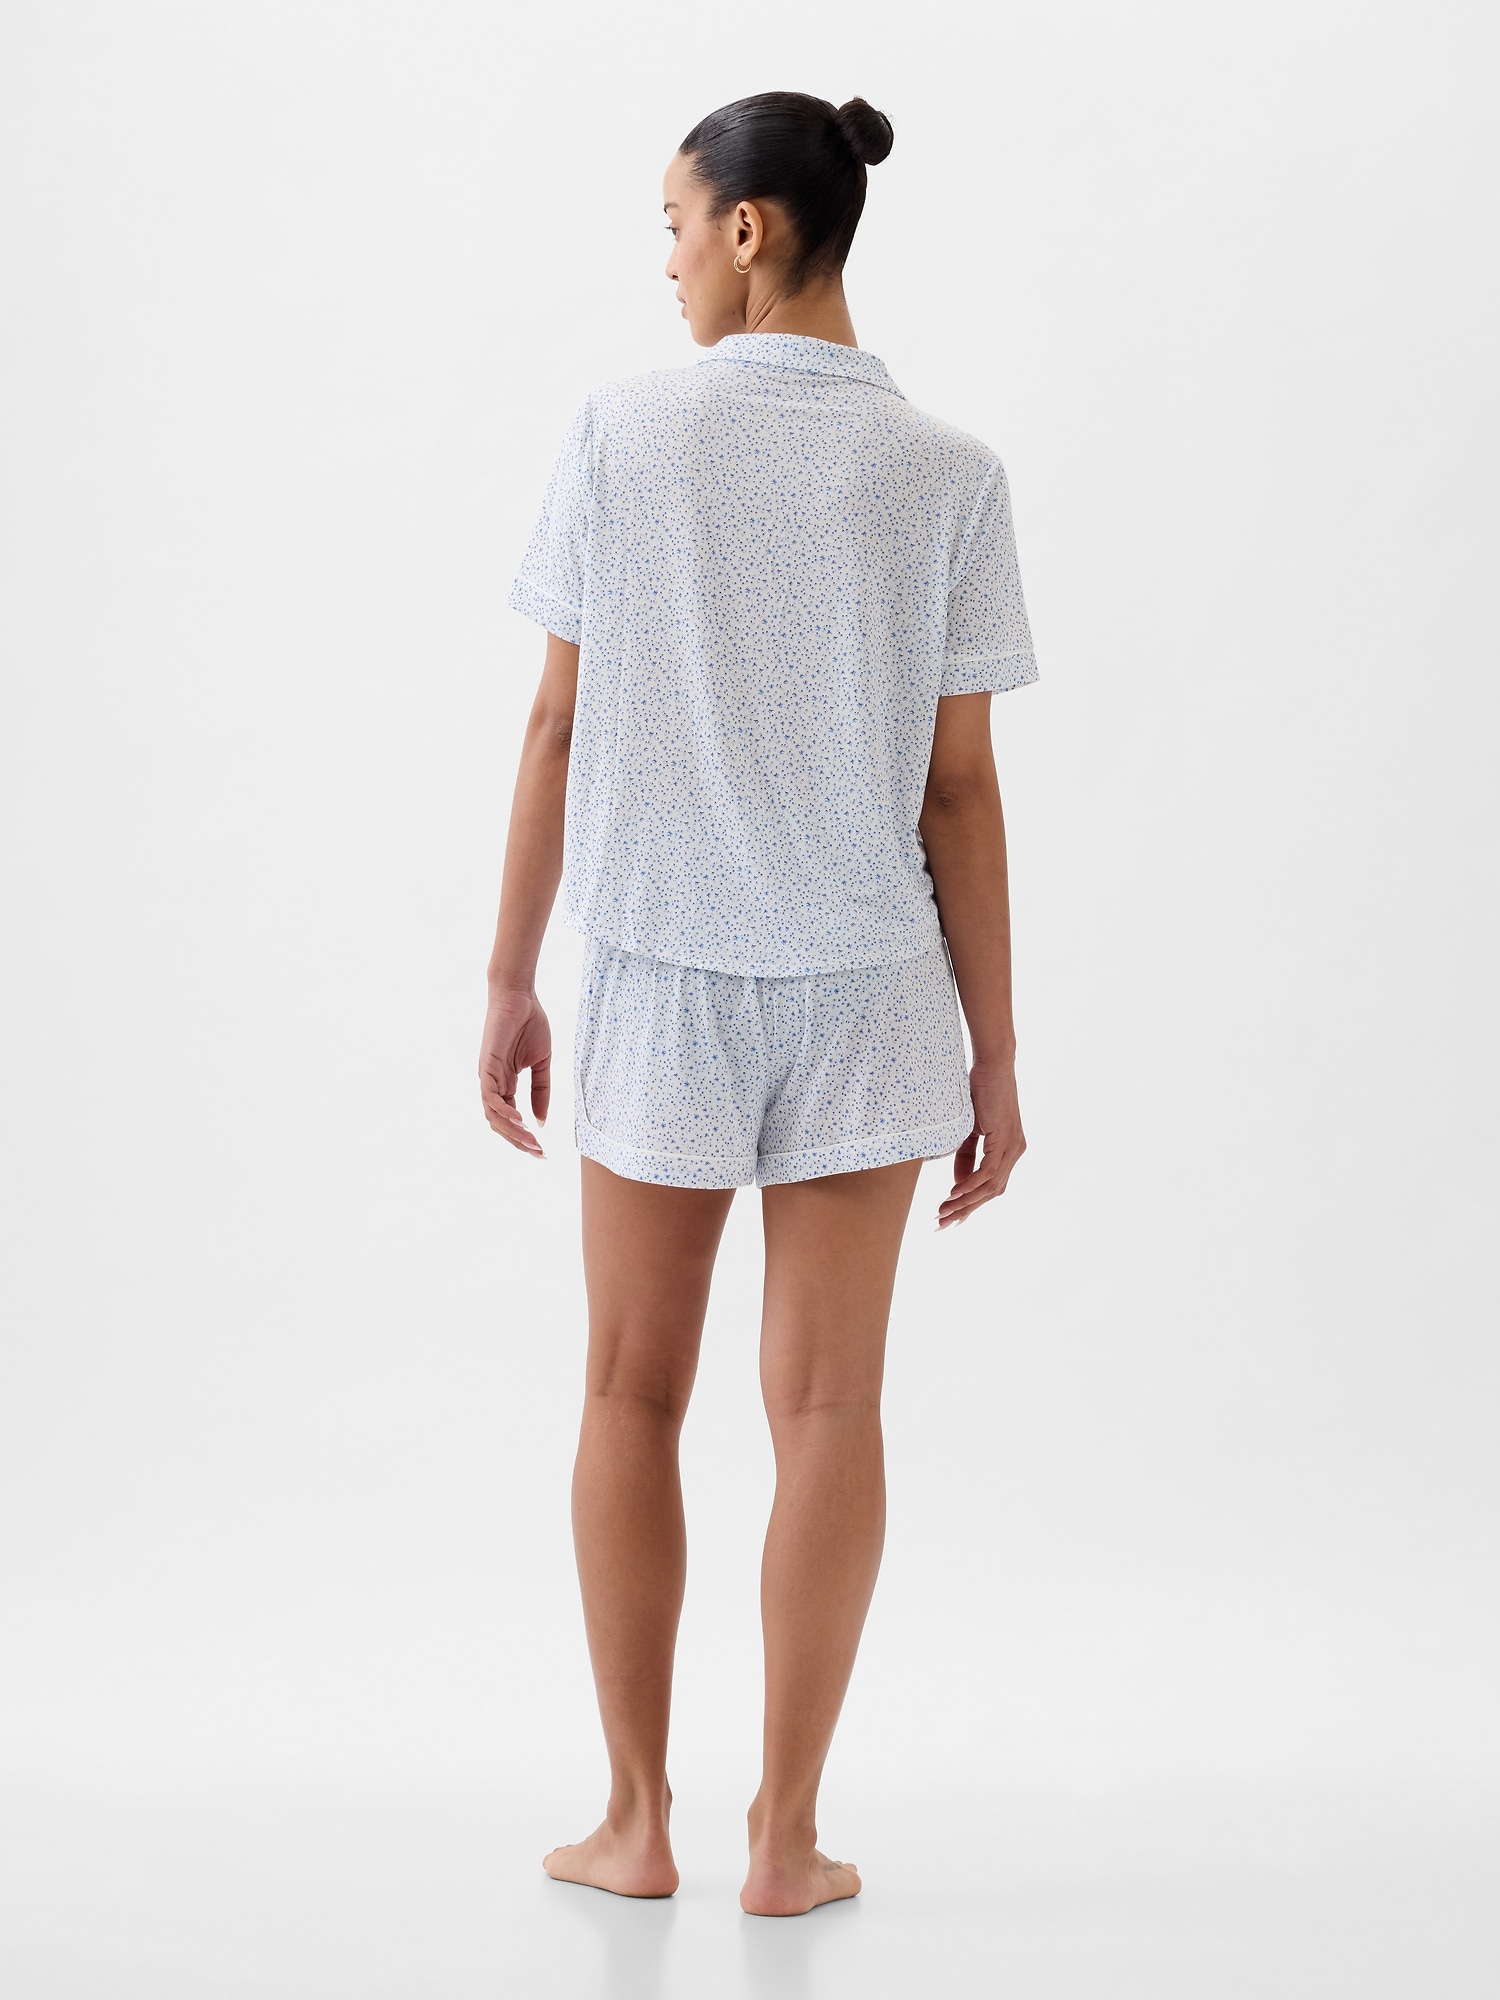 Buy Modal Sleep Tank Top - Order Pajama Tops online 5000008872 - PINK US